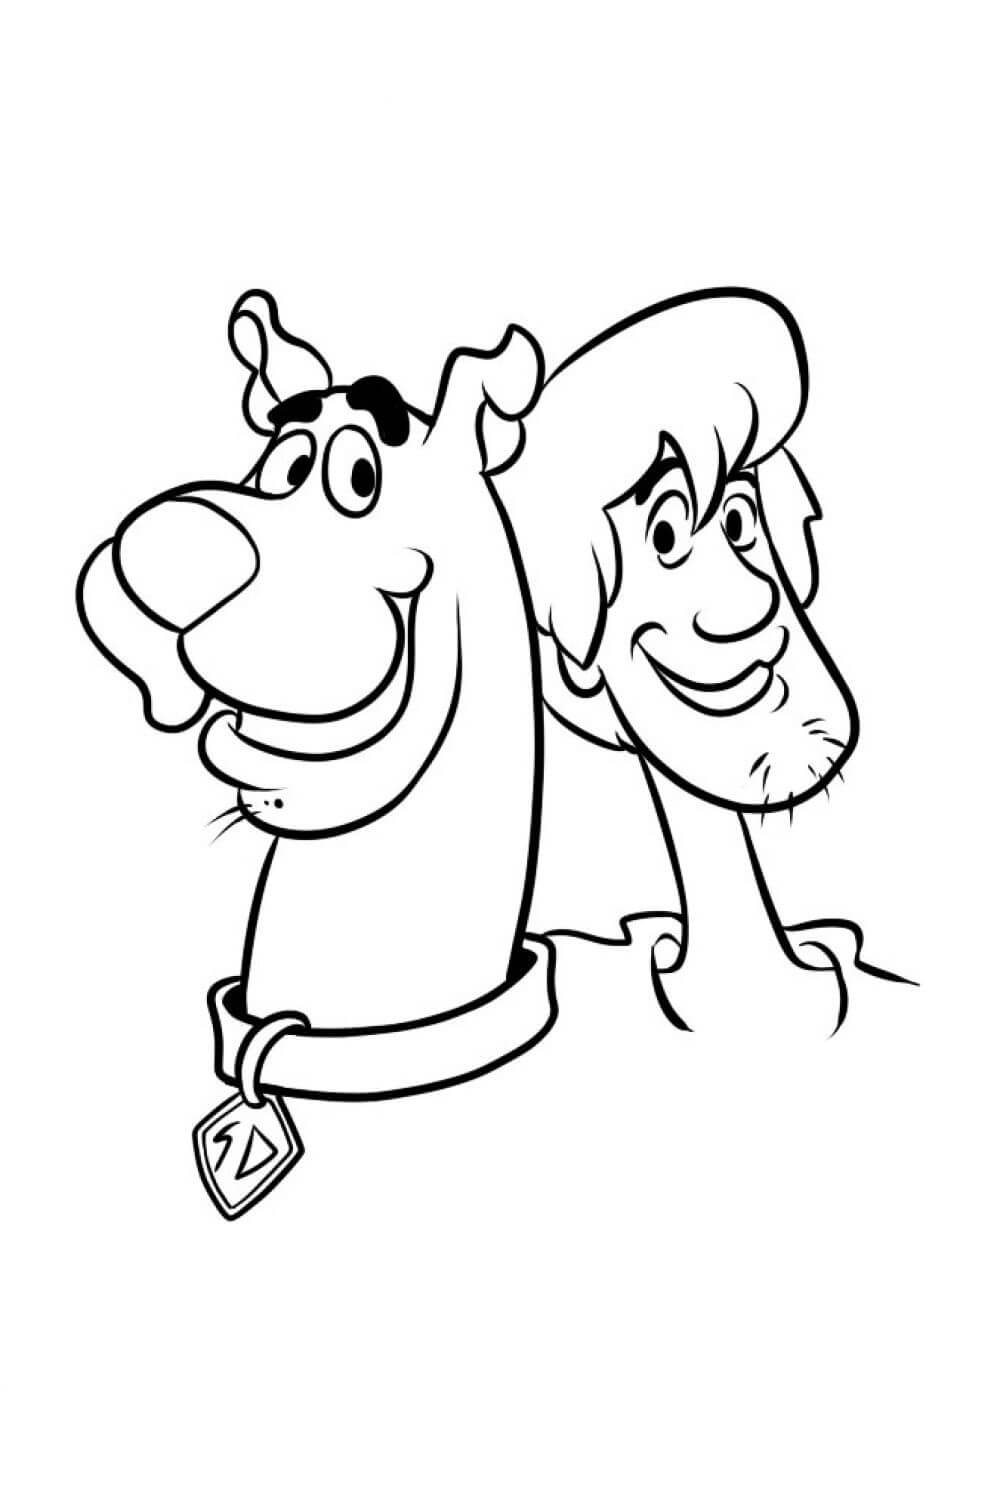 Cabeza Shaggy Rogers y Scooby Doo para colorir